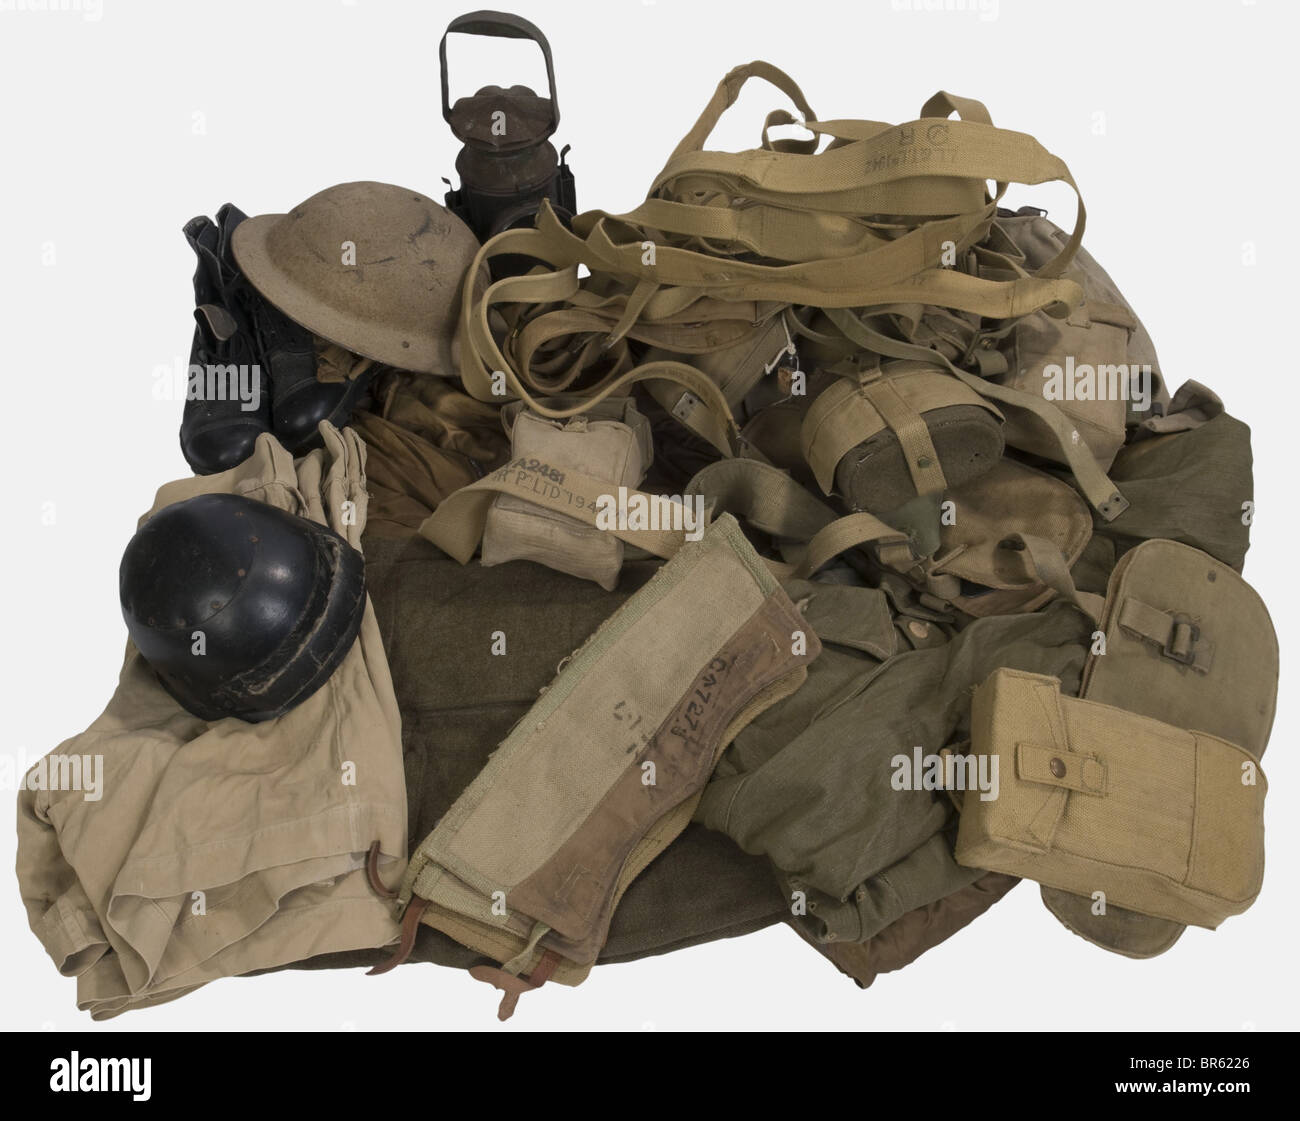 Eine Gruppe von Ausrüstung der British Army, einschließlich eines Gesamtzimmers des RAF-Flugs, zwei Paar Shorts in hellem Tuch, zwei Paar Gamaschen, kanadische Hose aus grüner Wolle ohne Taschen, ein Rucksack mit großem Muster, eine komplette Denim-Ermüdungsjacke, ein braun lackierter MK II-Helm, Einen Helm aus Fasertank mit Frontalschutz, eine Kantine mit Tragegurt, Und ein komplettes Set aus Feldgeräten mit EM-Gürtel, Paar Taschen, zwei Y-Trägern, Kantine mit Deckel, Verzurrwerkzeug, Paar Stiefeletten nach dem Krieg, Paar Taschen, EM-Gürtel mit einem Paar Munition, verschlungener Werkzeugbezug, Stockfoto